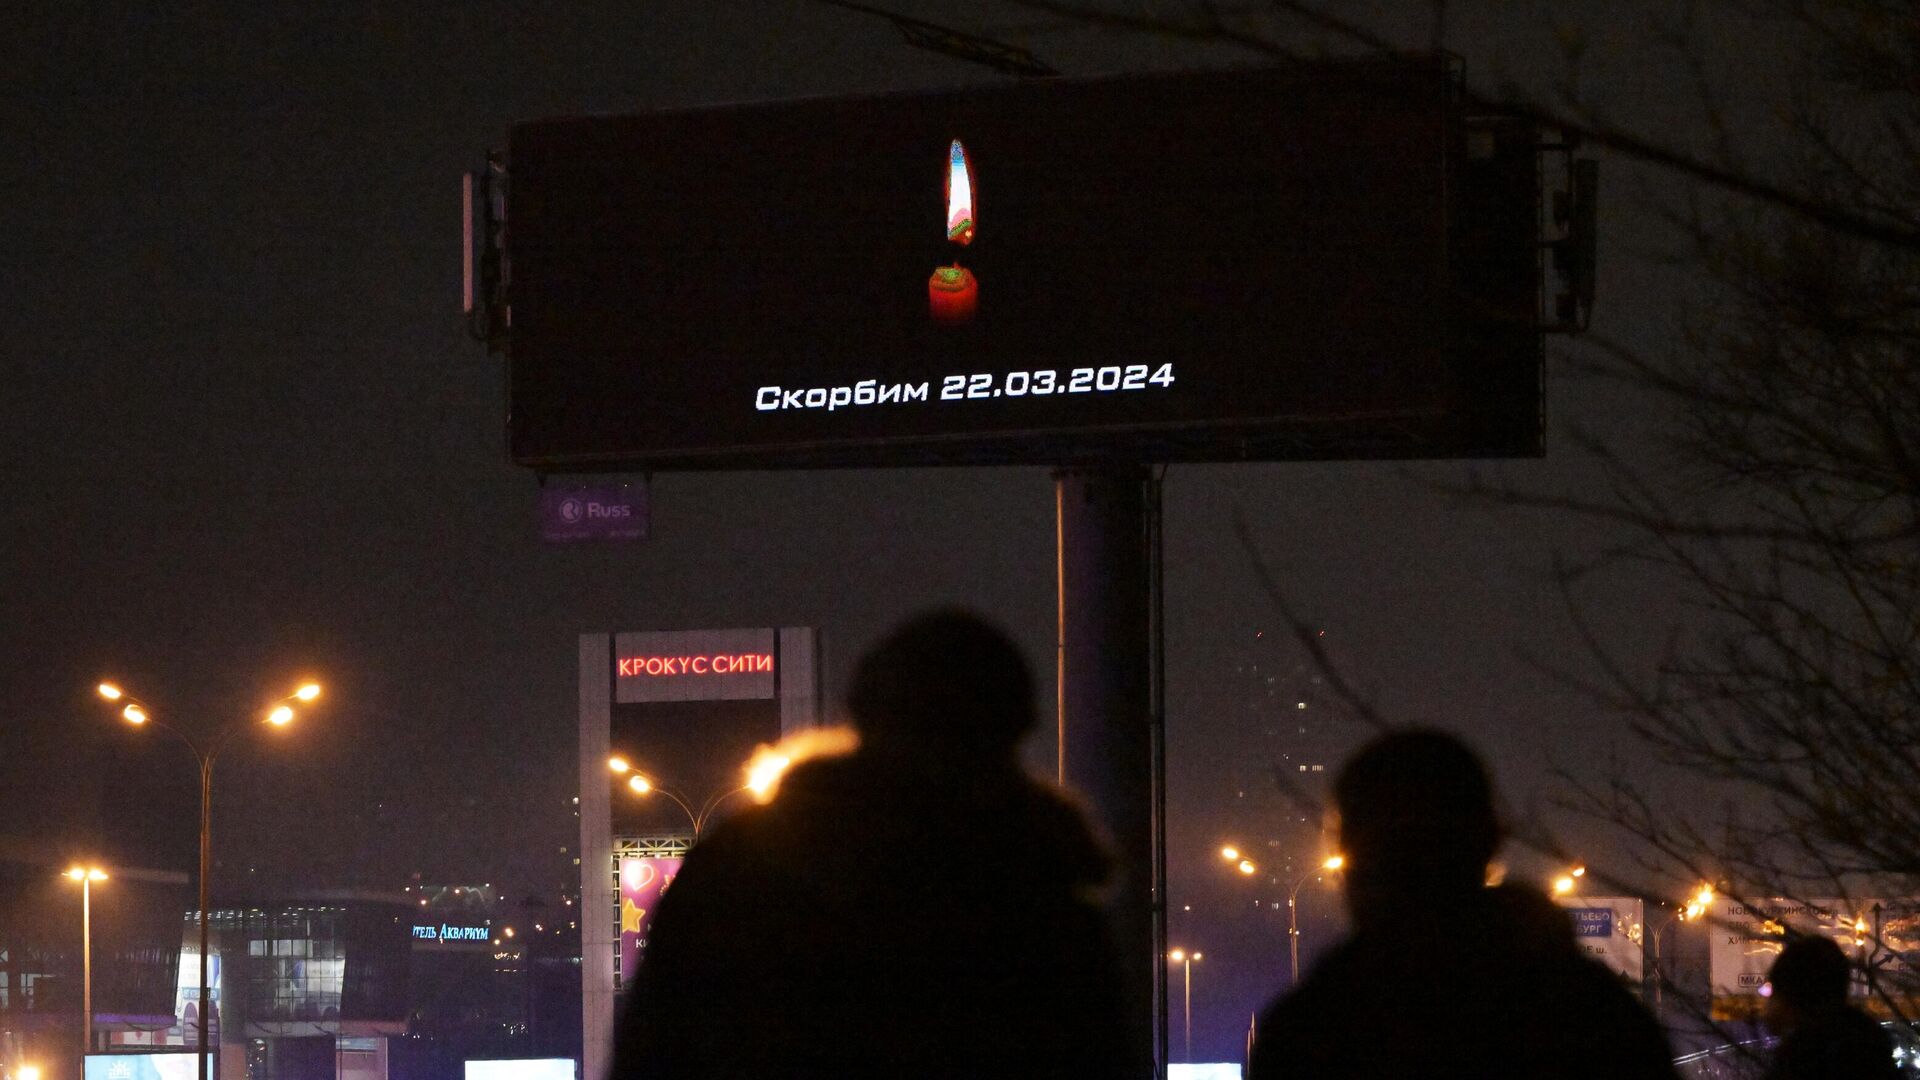 Сообщение Скорбим на рекламном экране, расположенном недалеко от концертного зала Крокус Сити Холл - РИА Новости, 1920, 27.03.2024